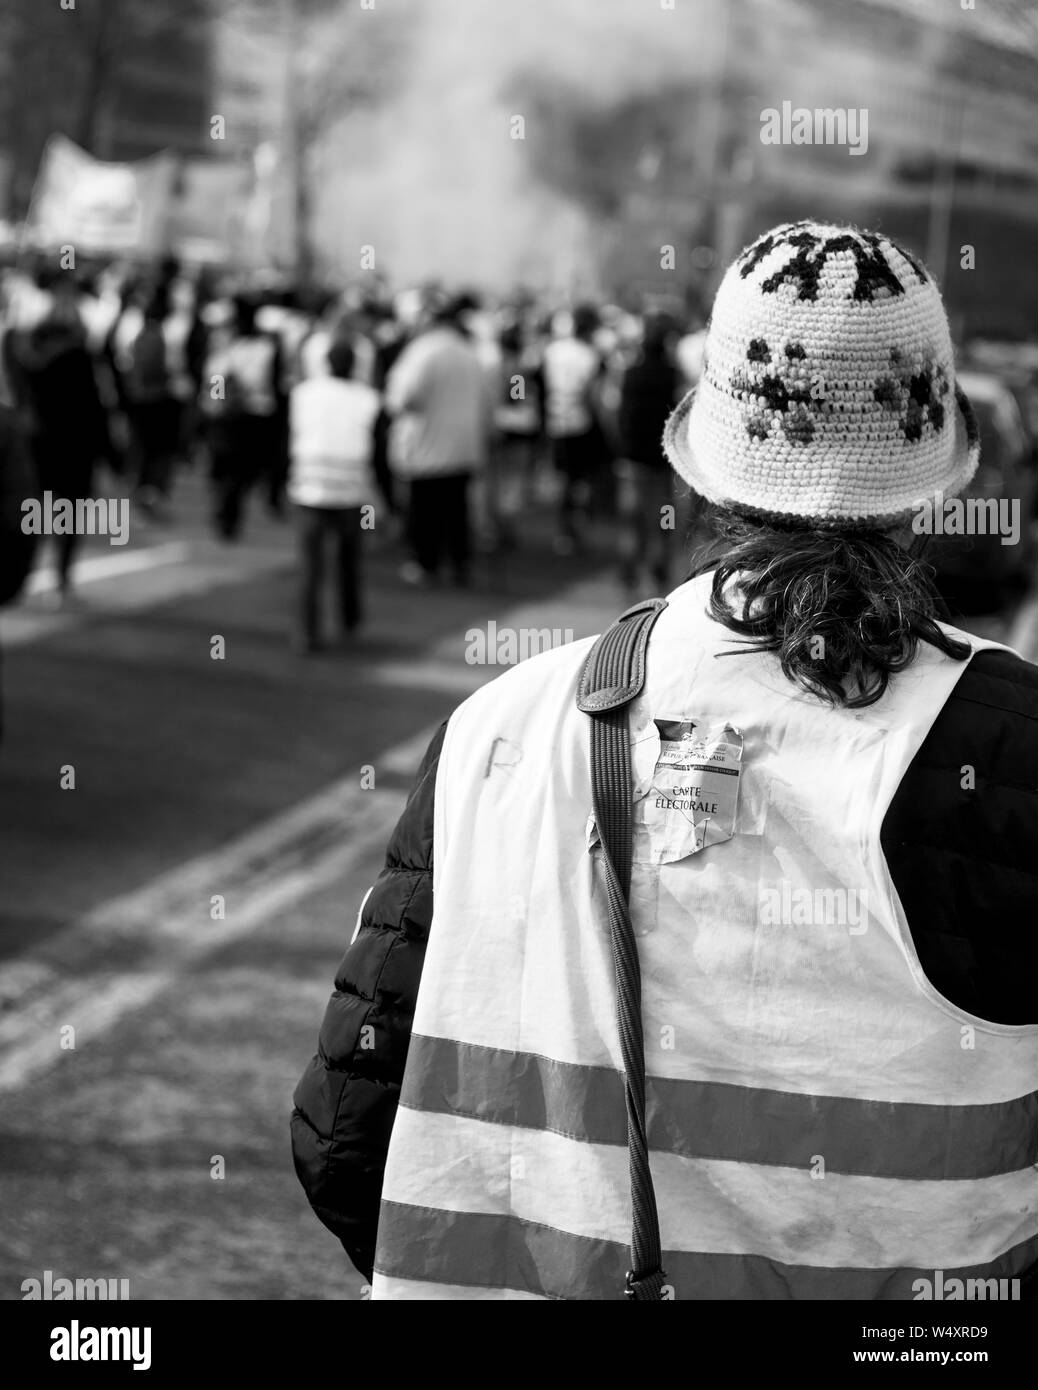 Manifestations gilets jaunes Banque d'images noir et blanc - Alamy